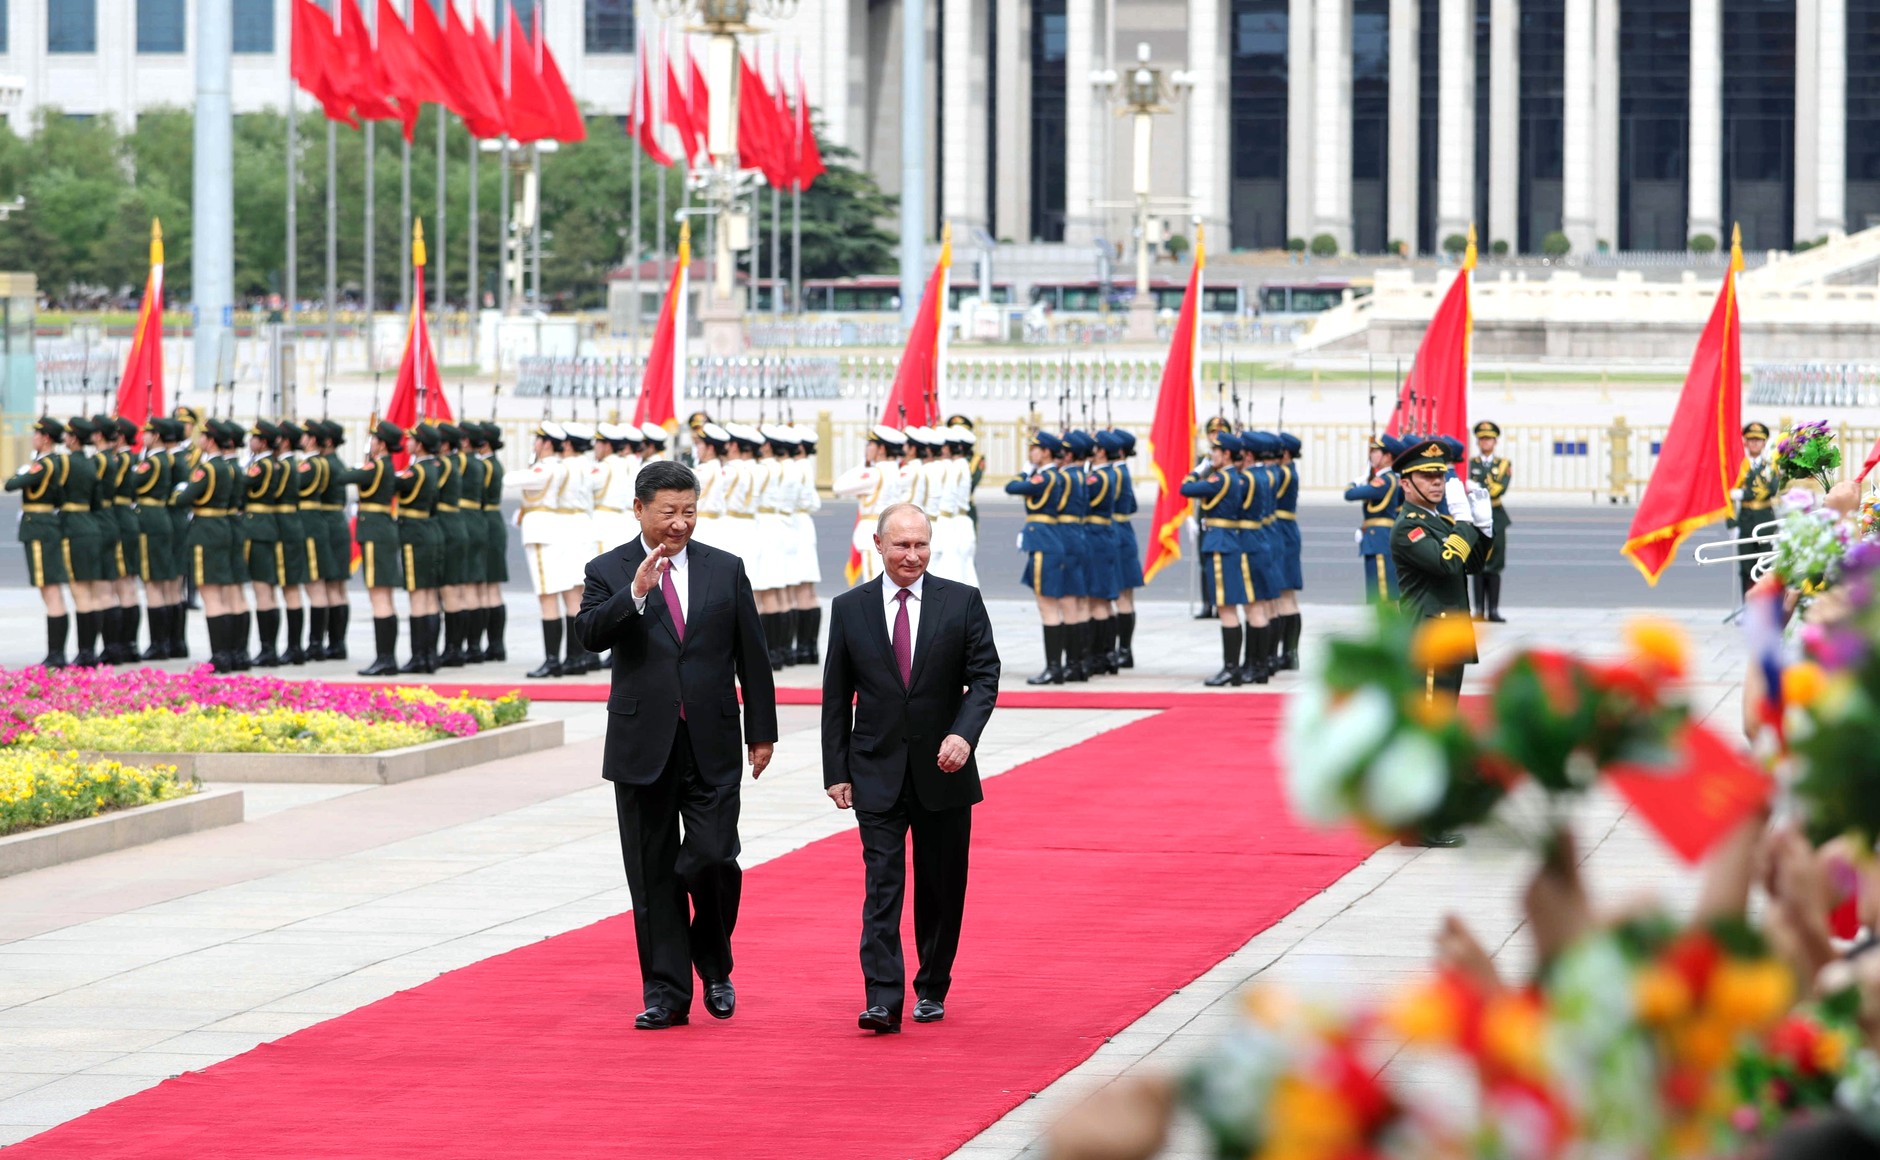 President Putin og President Jinping går nedover en rød løper og vinker til publikum. I bakgrunnen står militæret oppstilt.